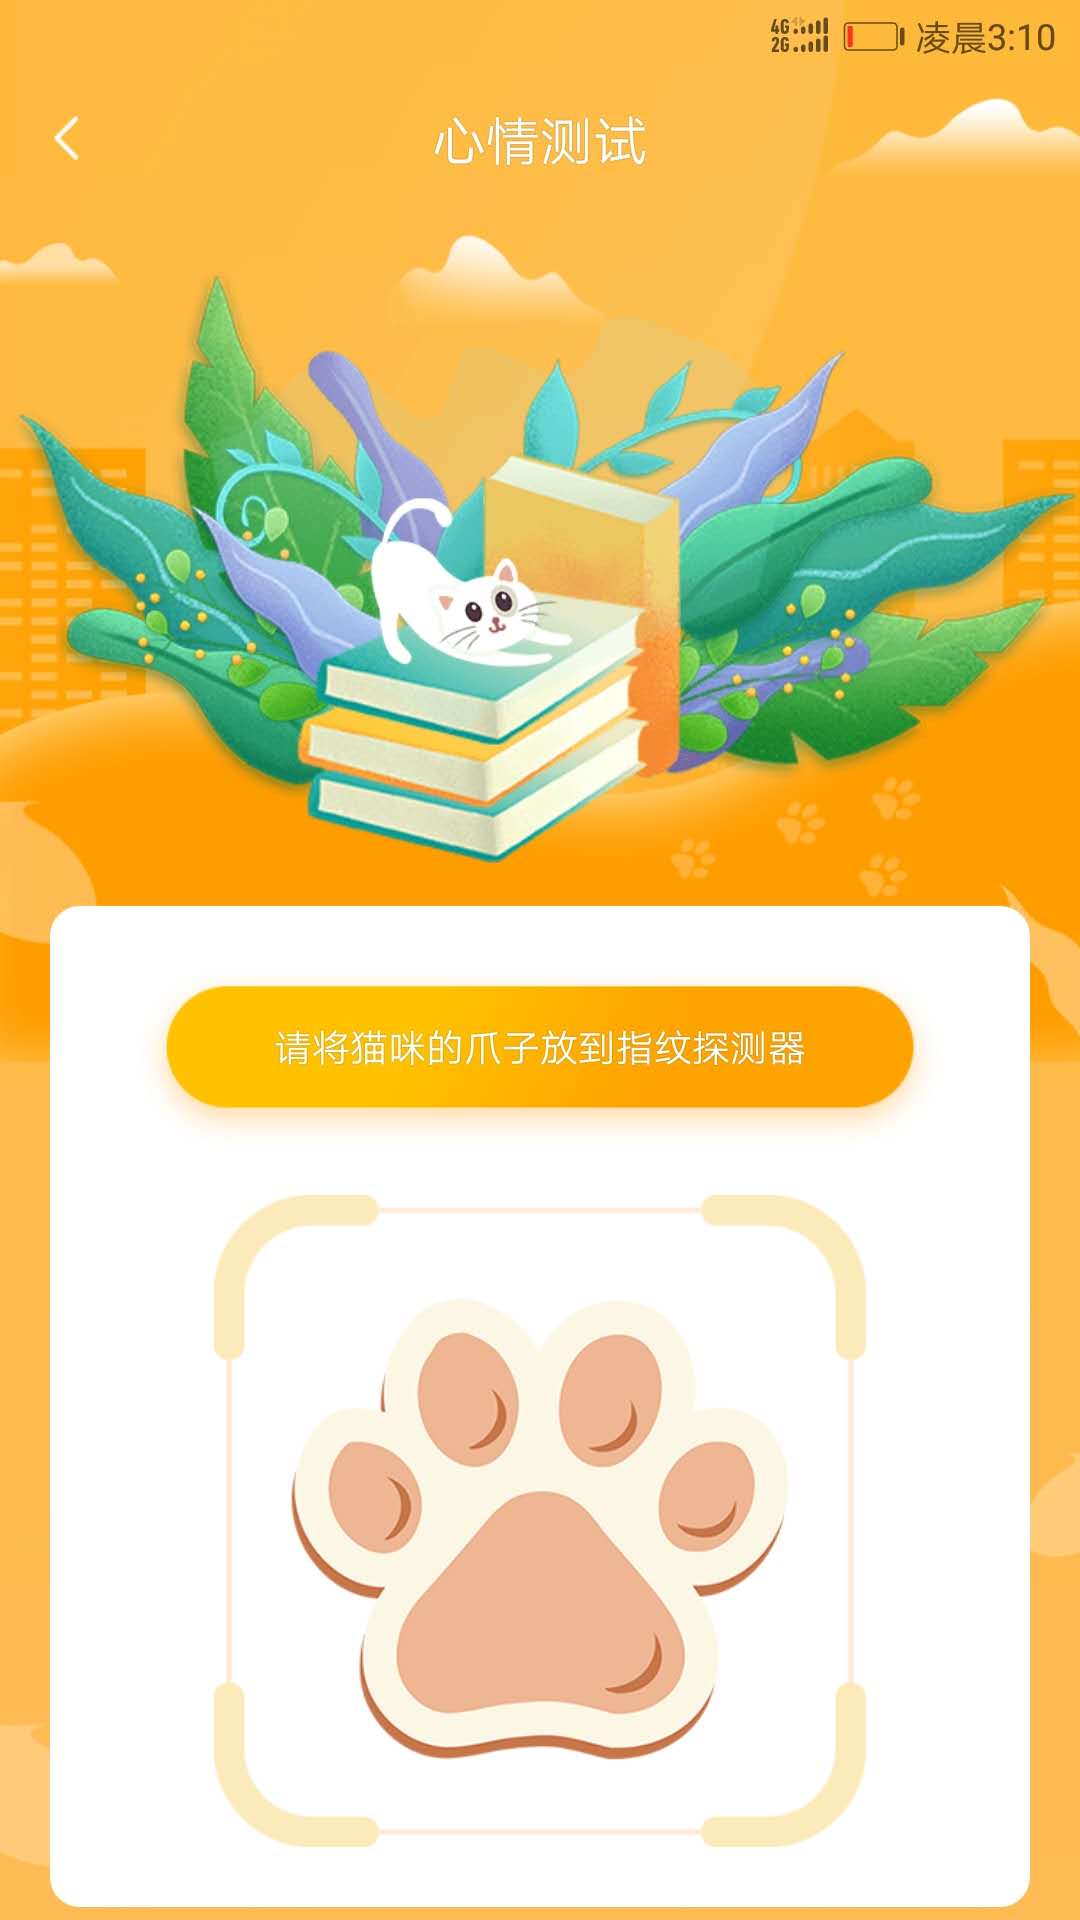 狗语人狗动物翻译器软件app下载